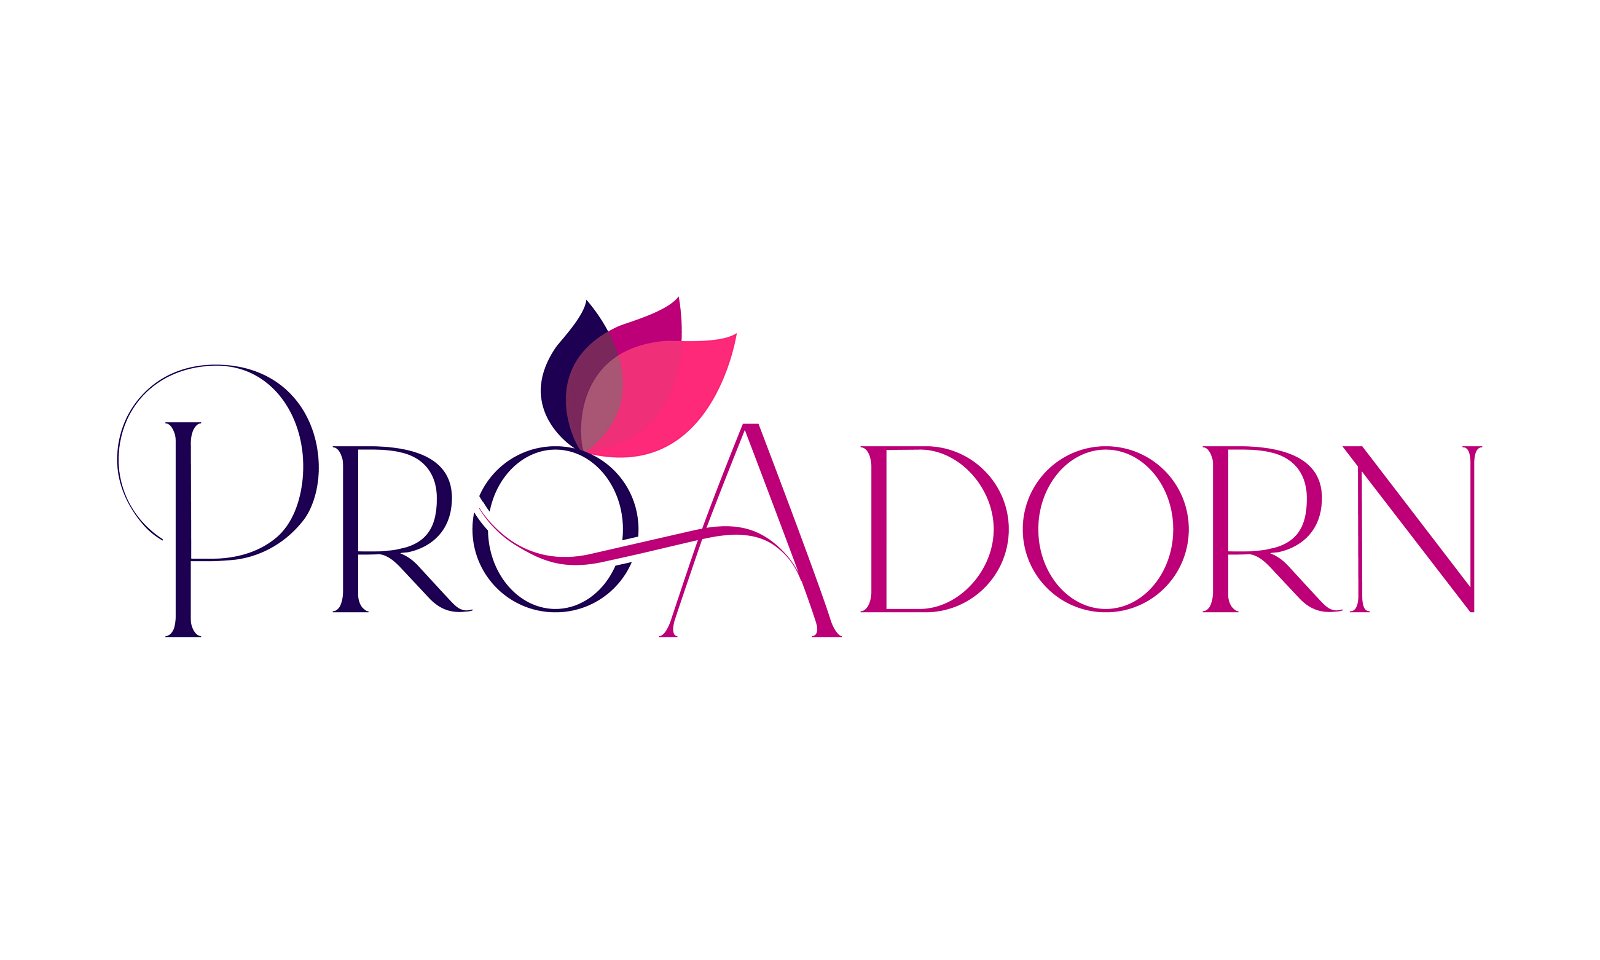 ProAdorn.com - Creative brandable domain for sale